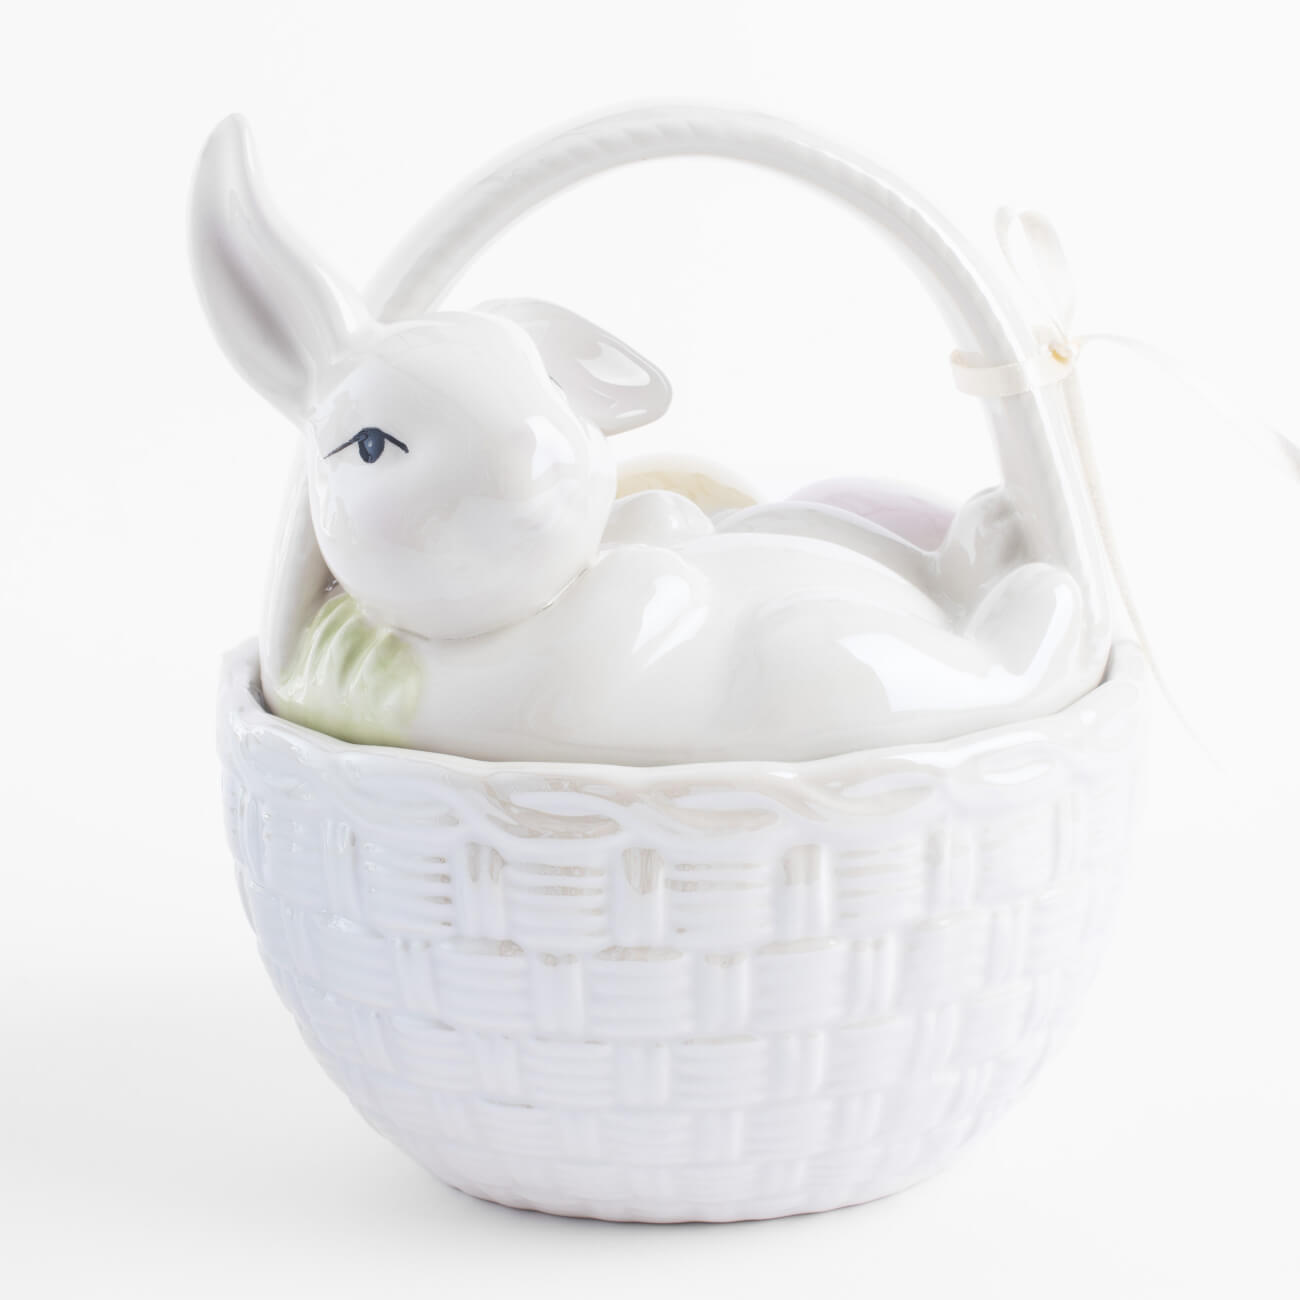 Емкость для хранения, 17х14 см, 1,5 л, с ручкой, керамика, молочная, перламутр, Кролик, Easter подставка для яйца 8 см керамика перламутр кролик с корзиной в ах easter